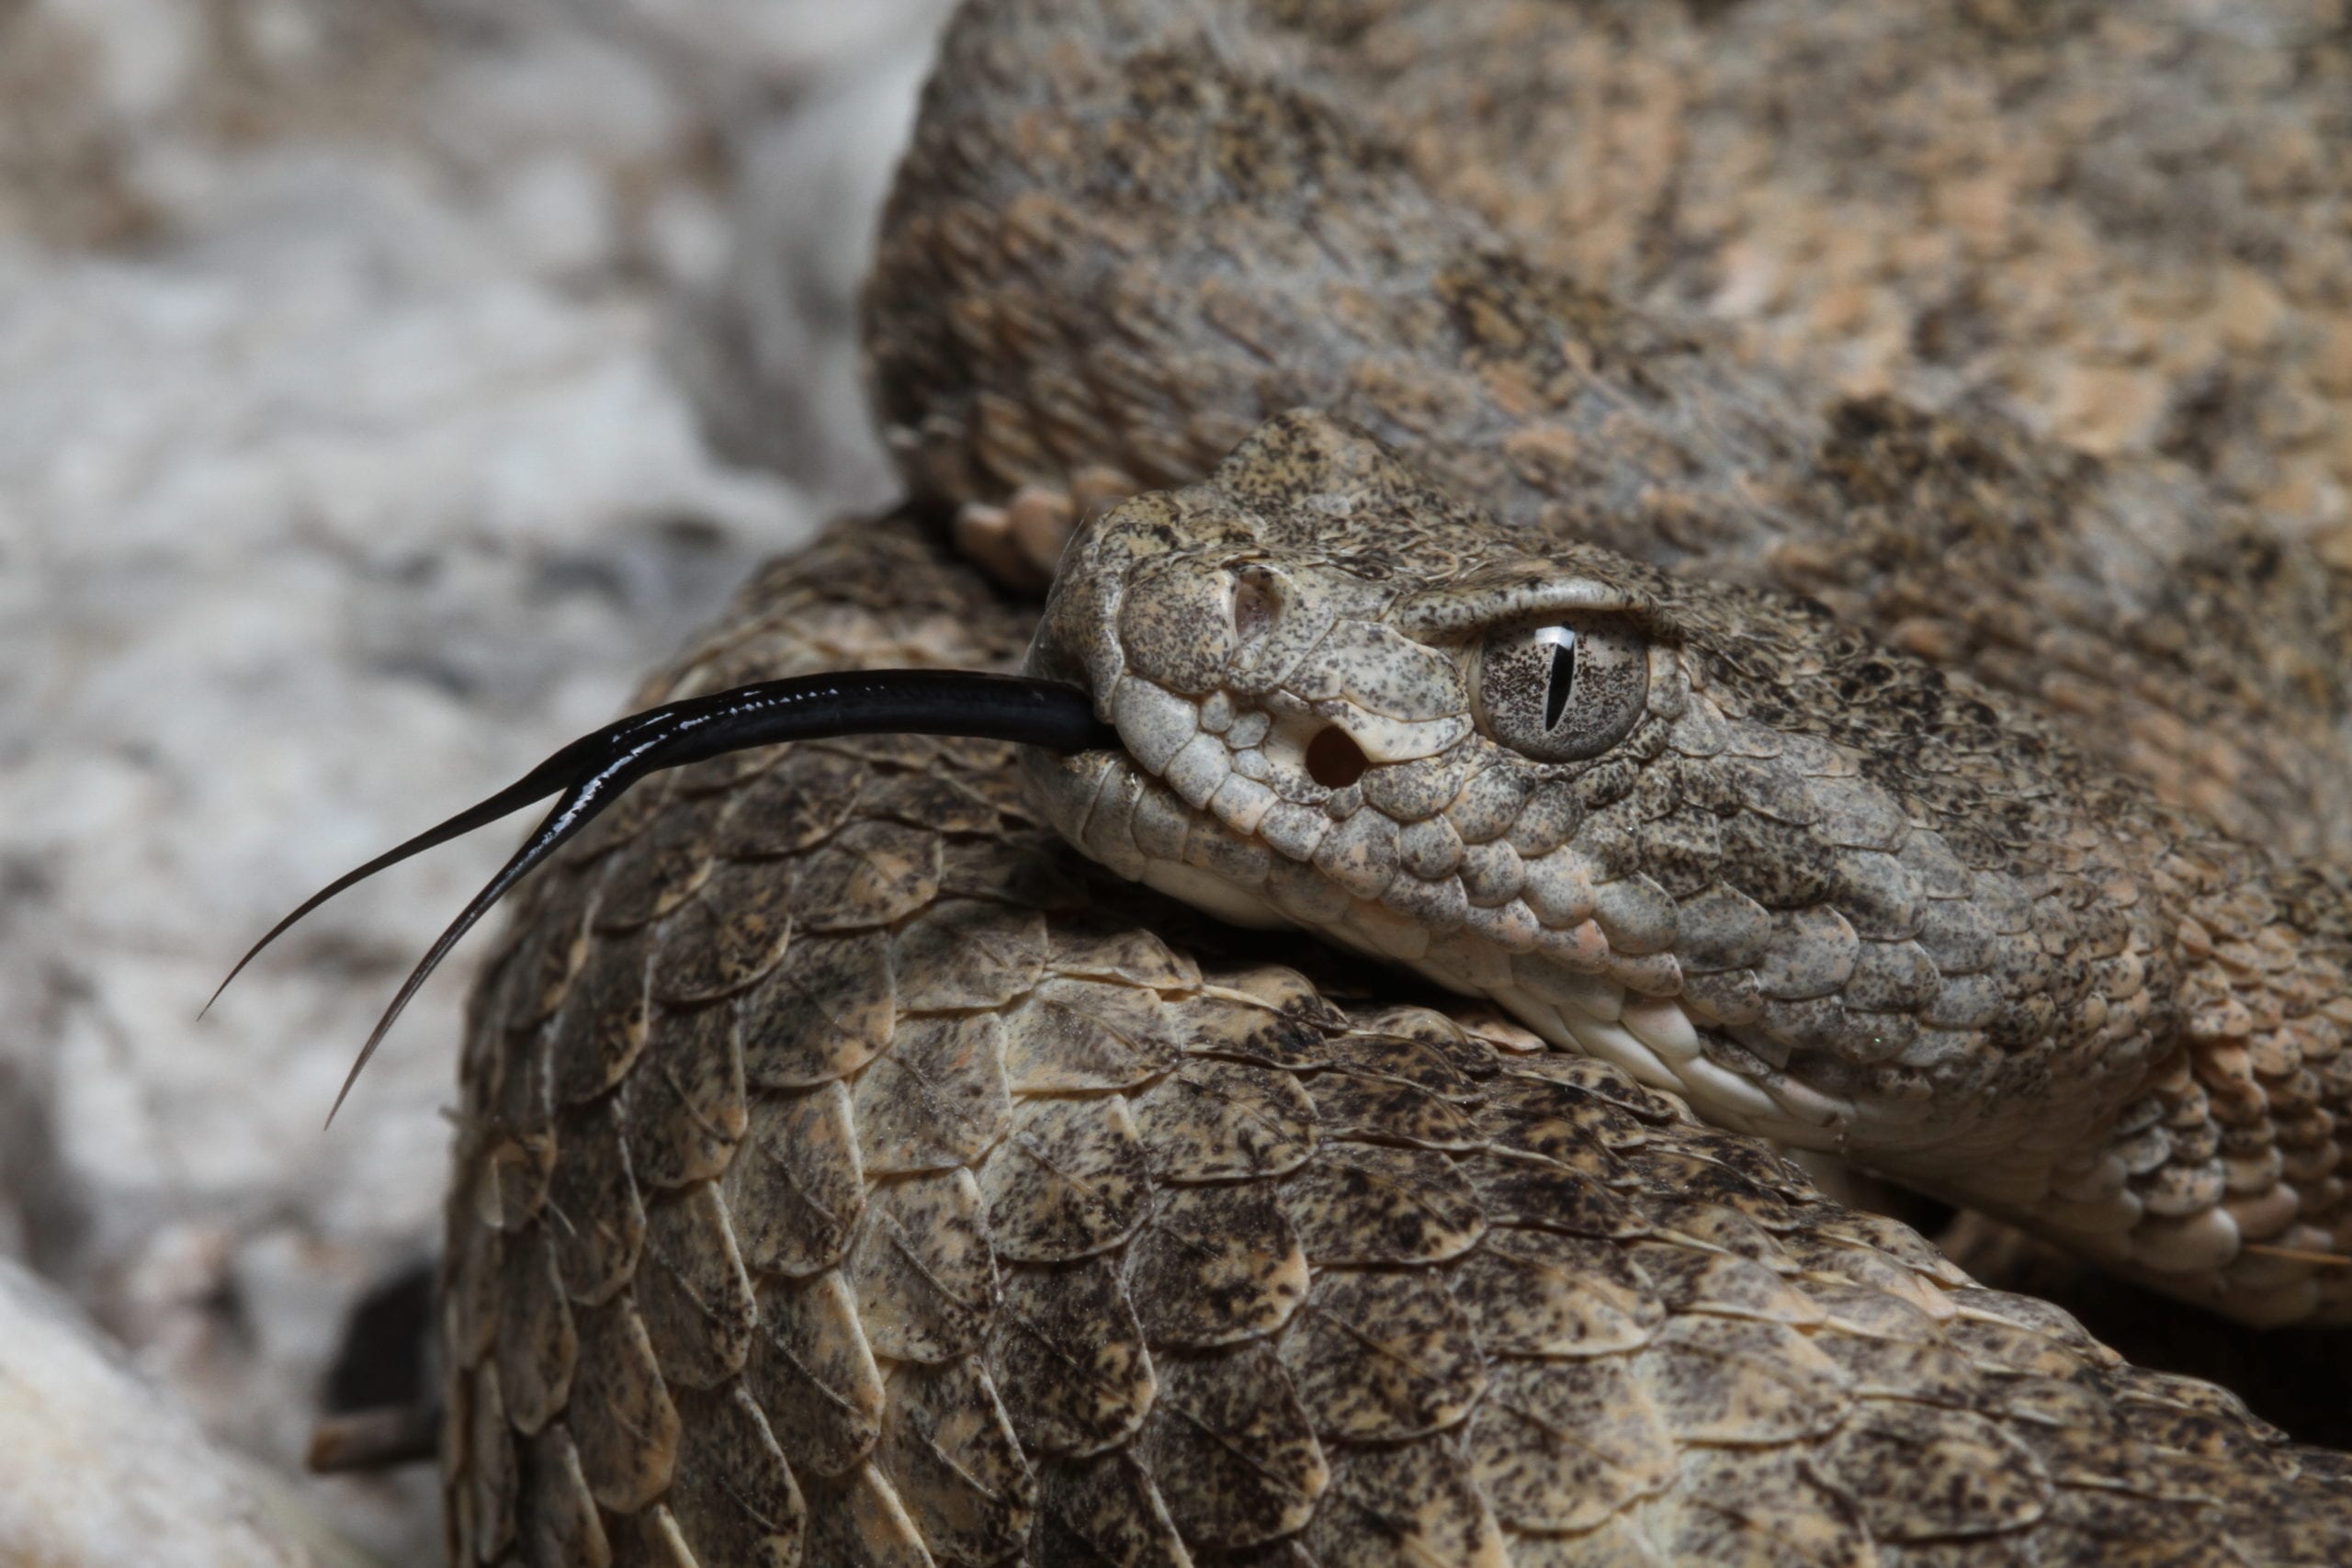 close-up of Tiger Rattlesnake head and tongue